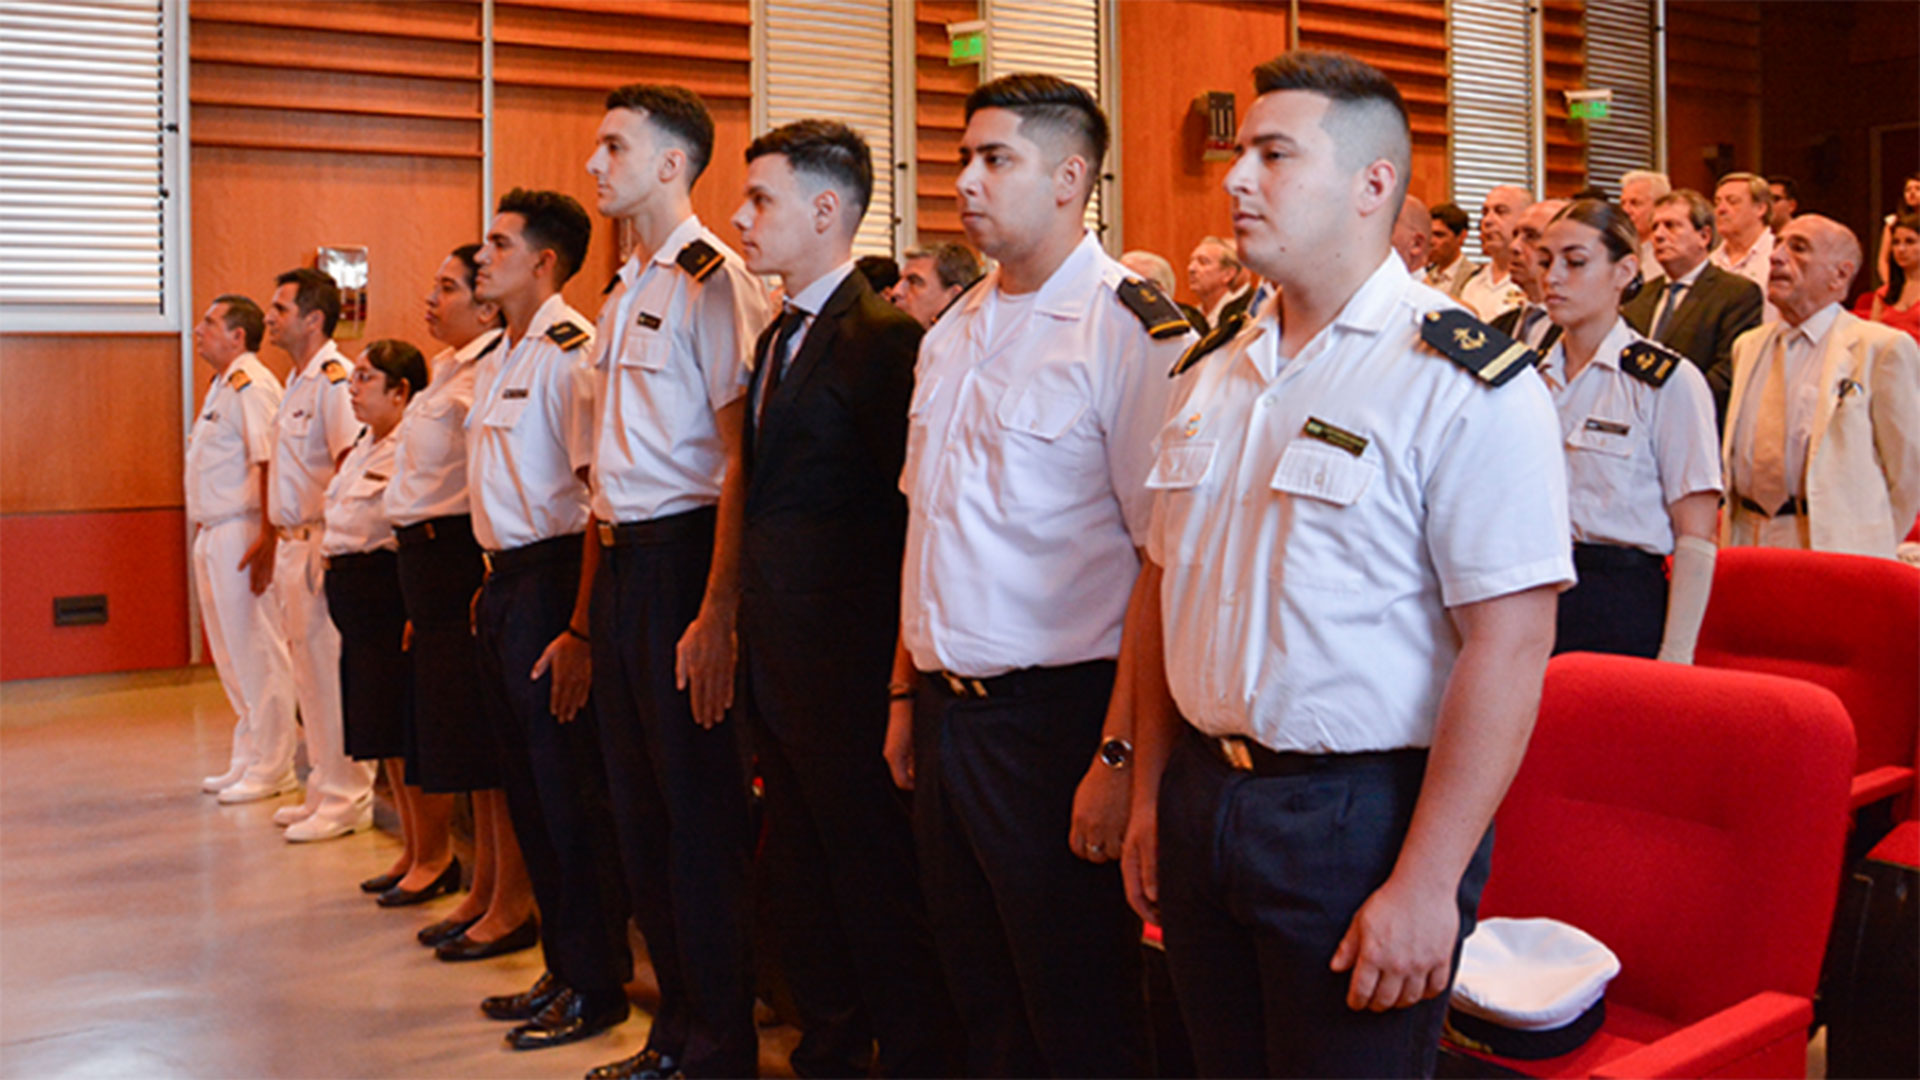 El 6 de diciembre fue la ceremonia de egreso de los oficiales de la Escuela Nacional de Náutica, entre los cuales había solo 4 comisarios navales 